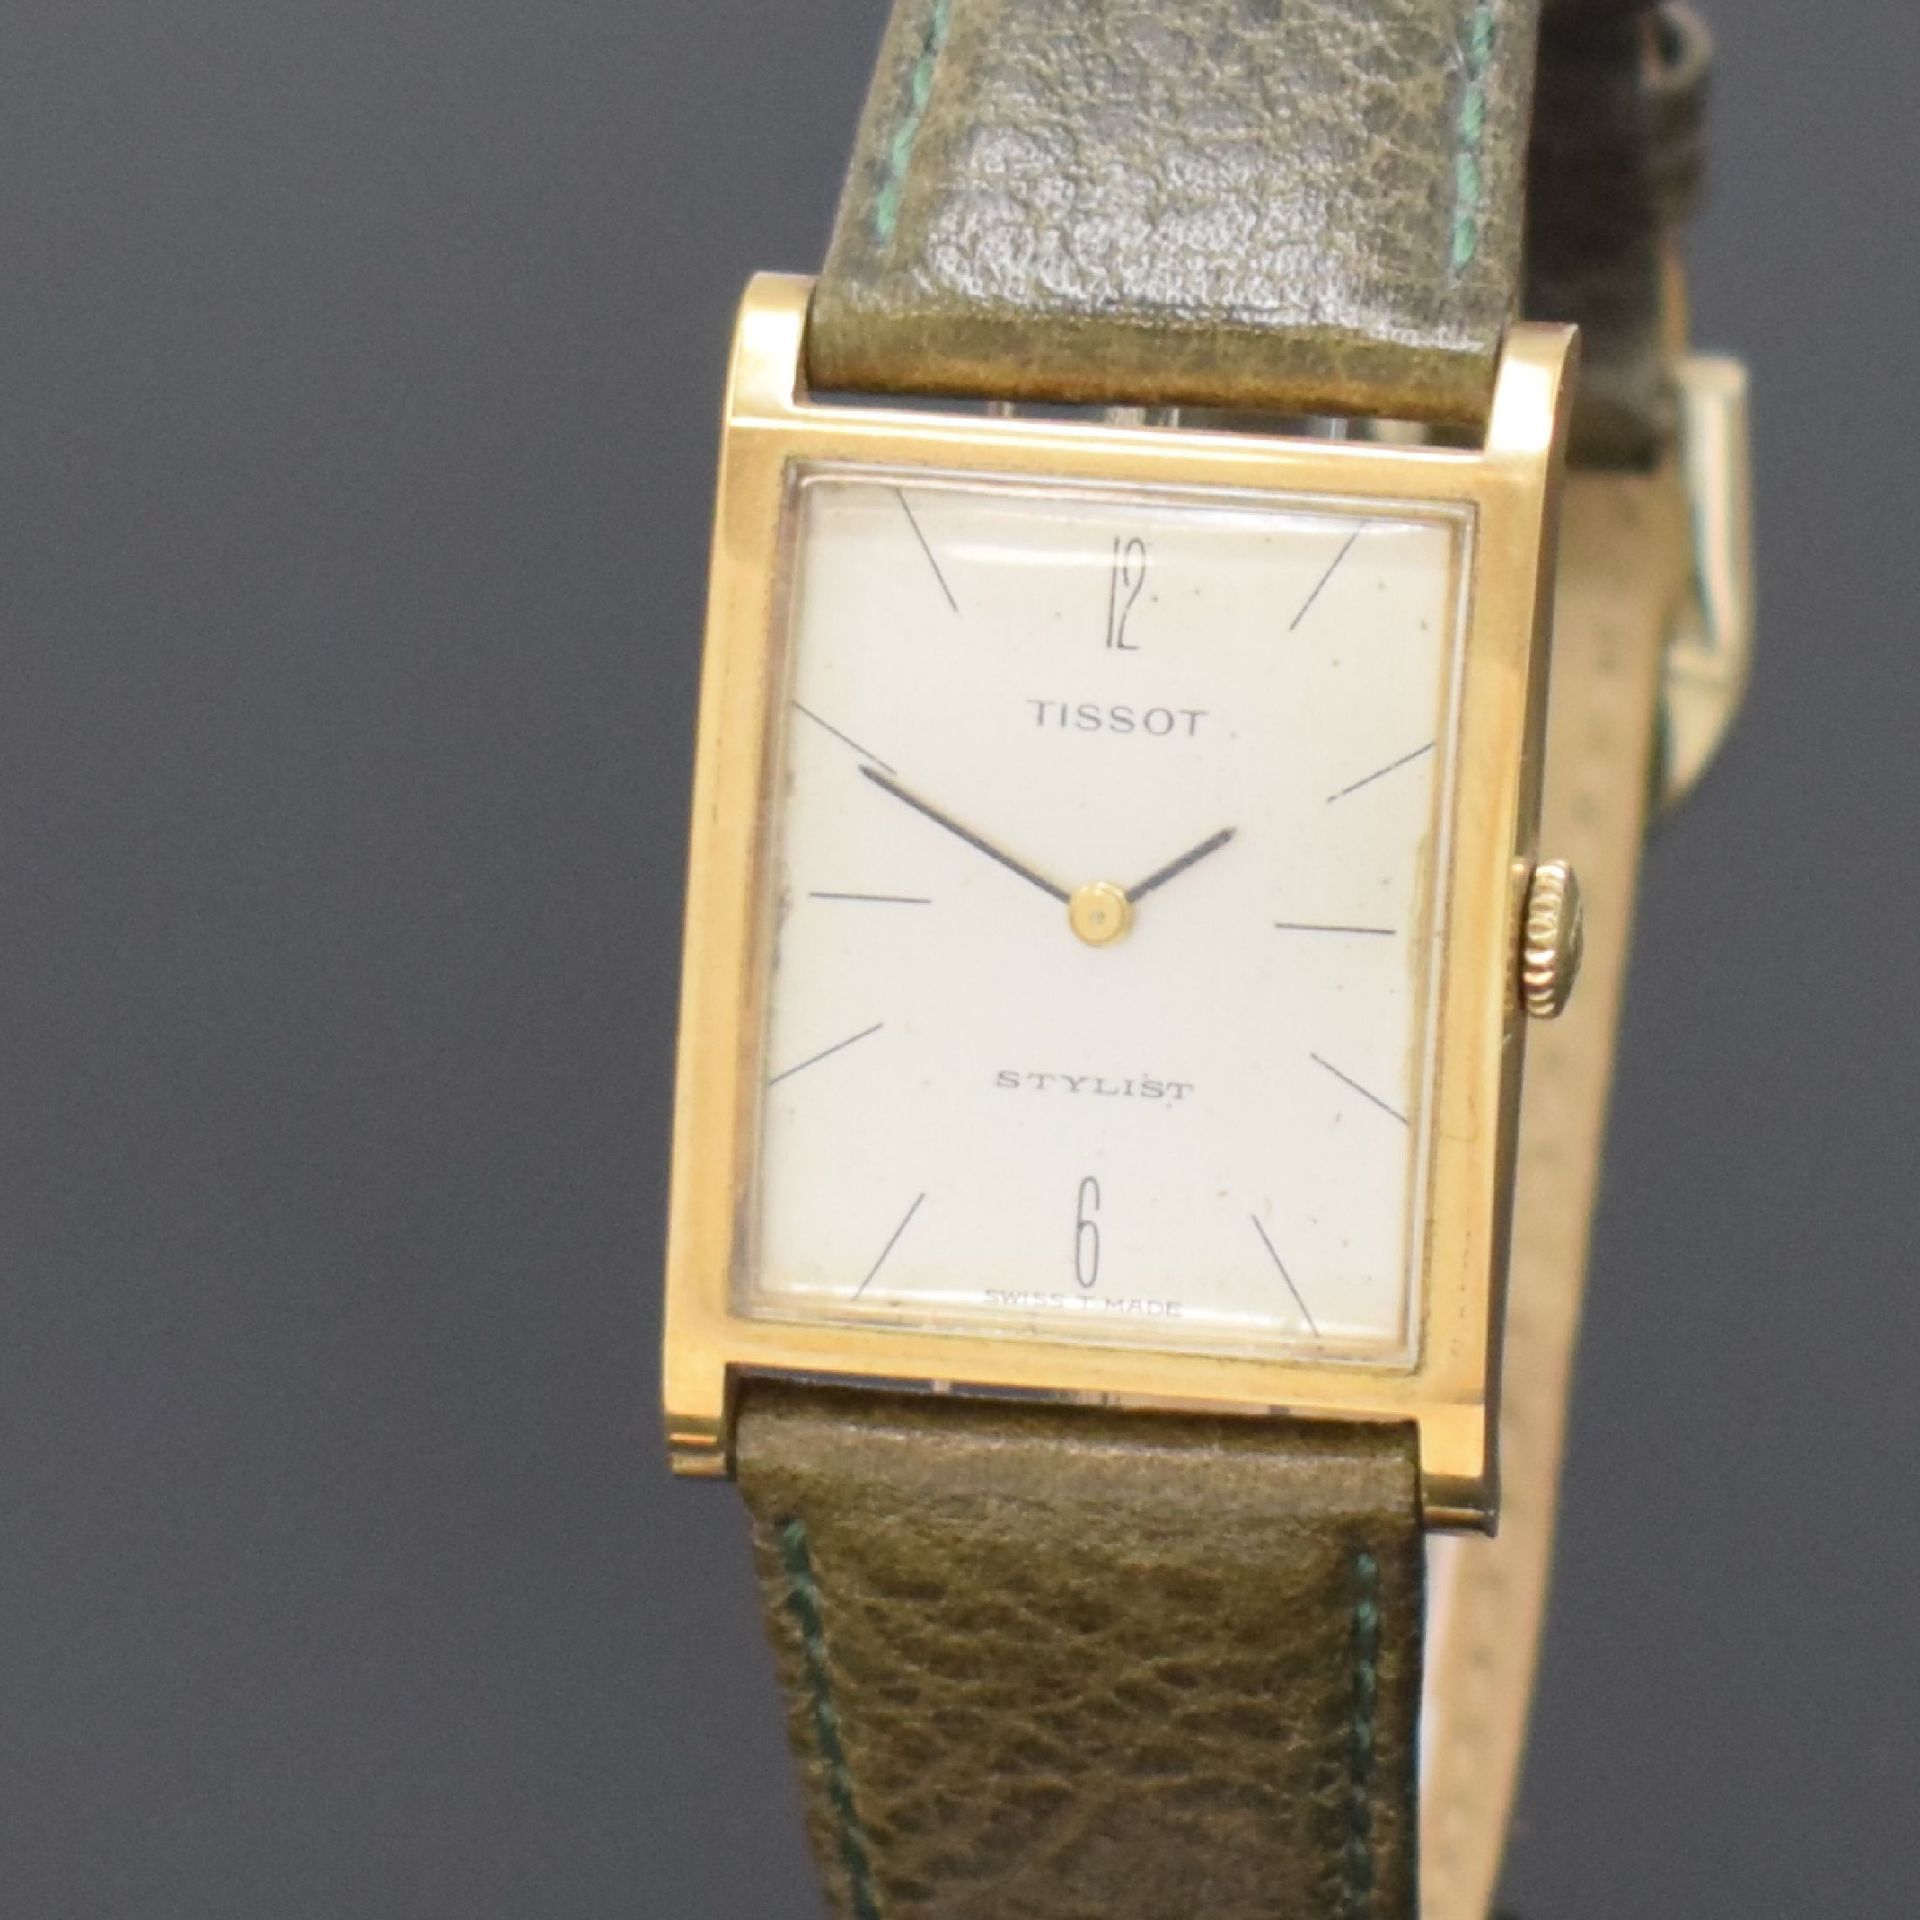 TISSOT Stylist Armbanduhr in GG 585/000, Schweiz um 1965, - Image 2 of 5